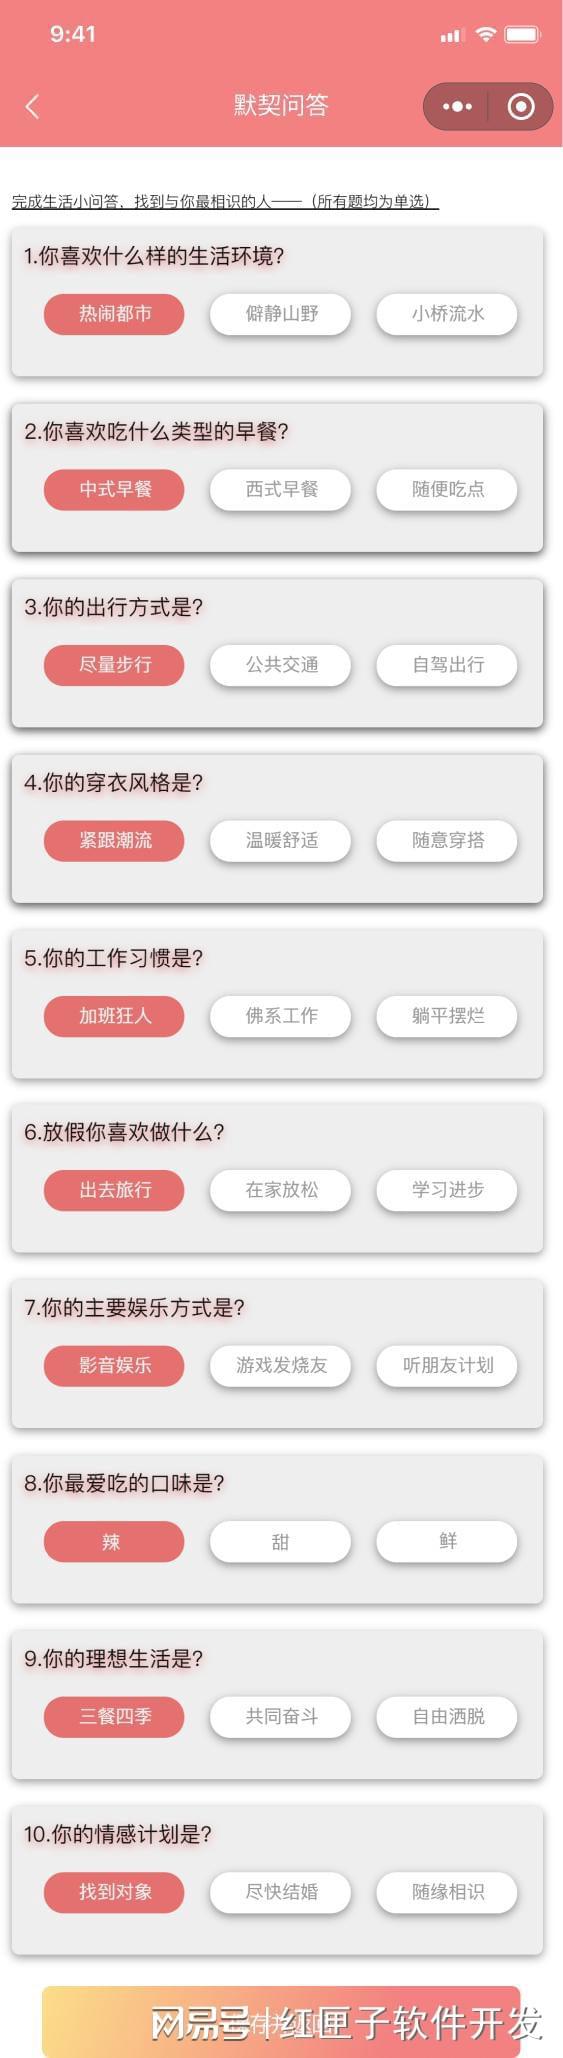 婚恋相亲交友系统开南宫28官网发前景及需求方案-广州软件开发(图2)